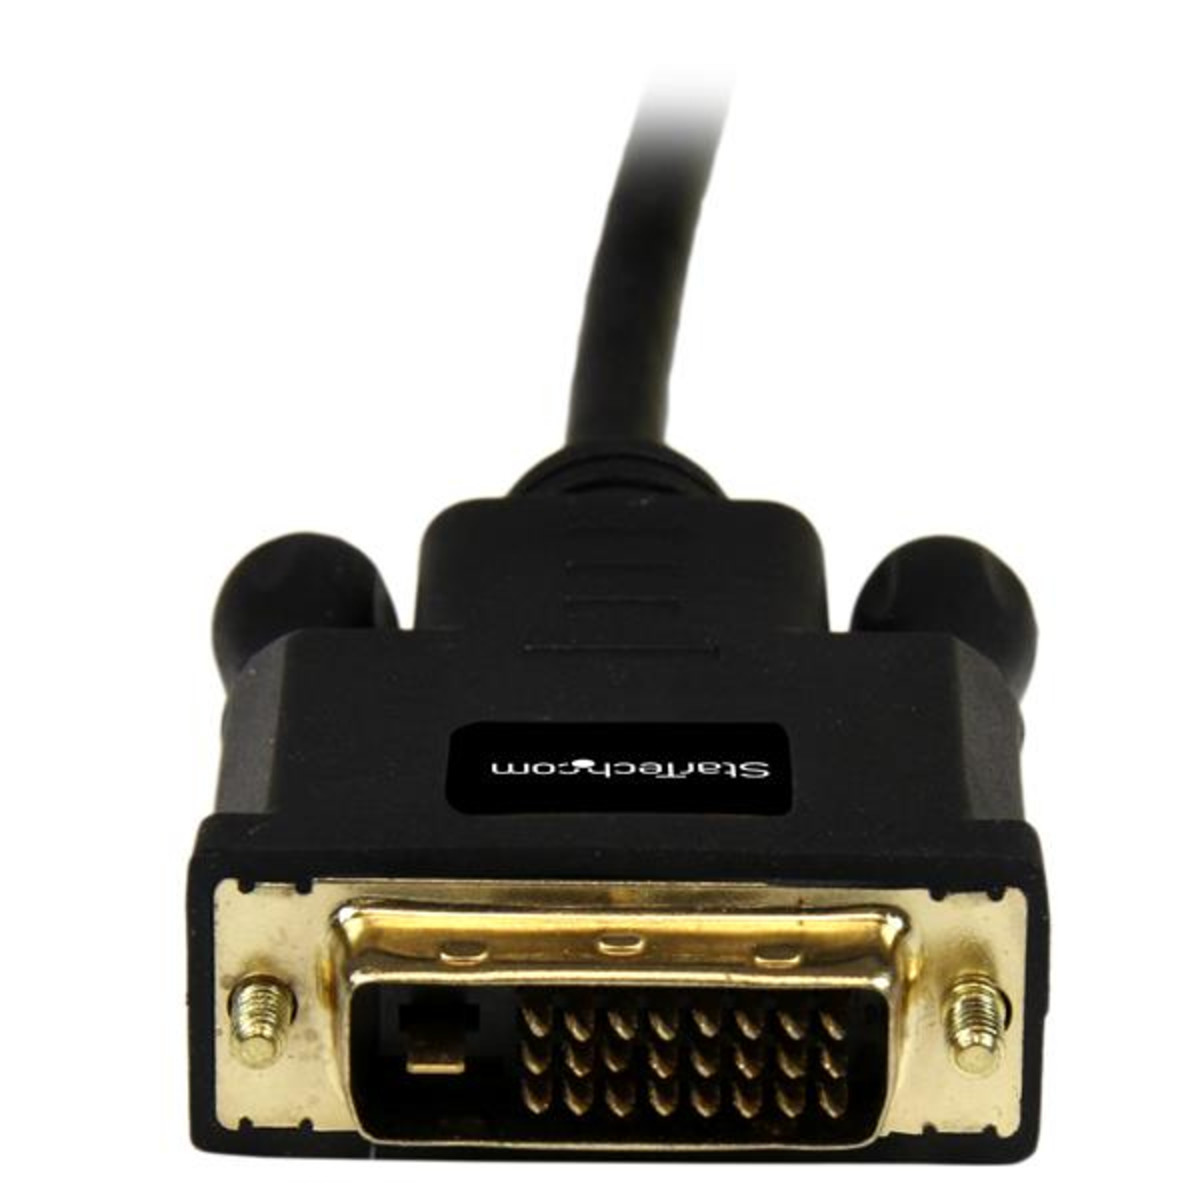 6' Mini DisplayP-DVI Adpt Conv Cable